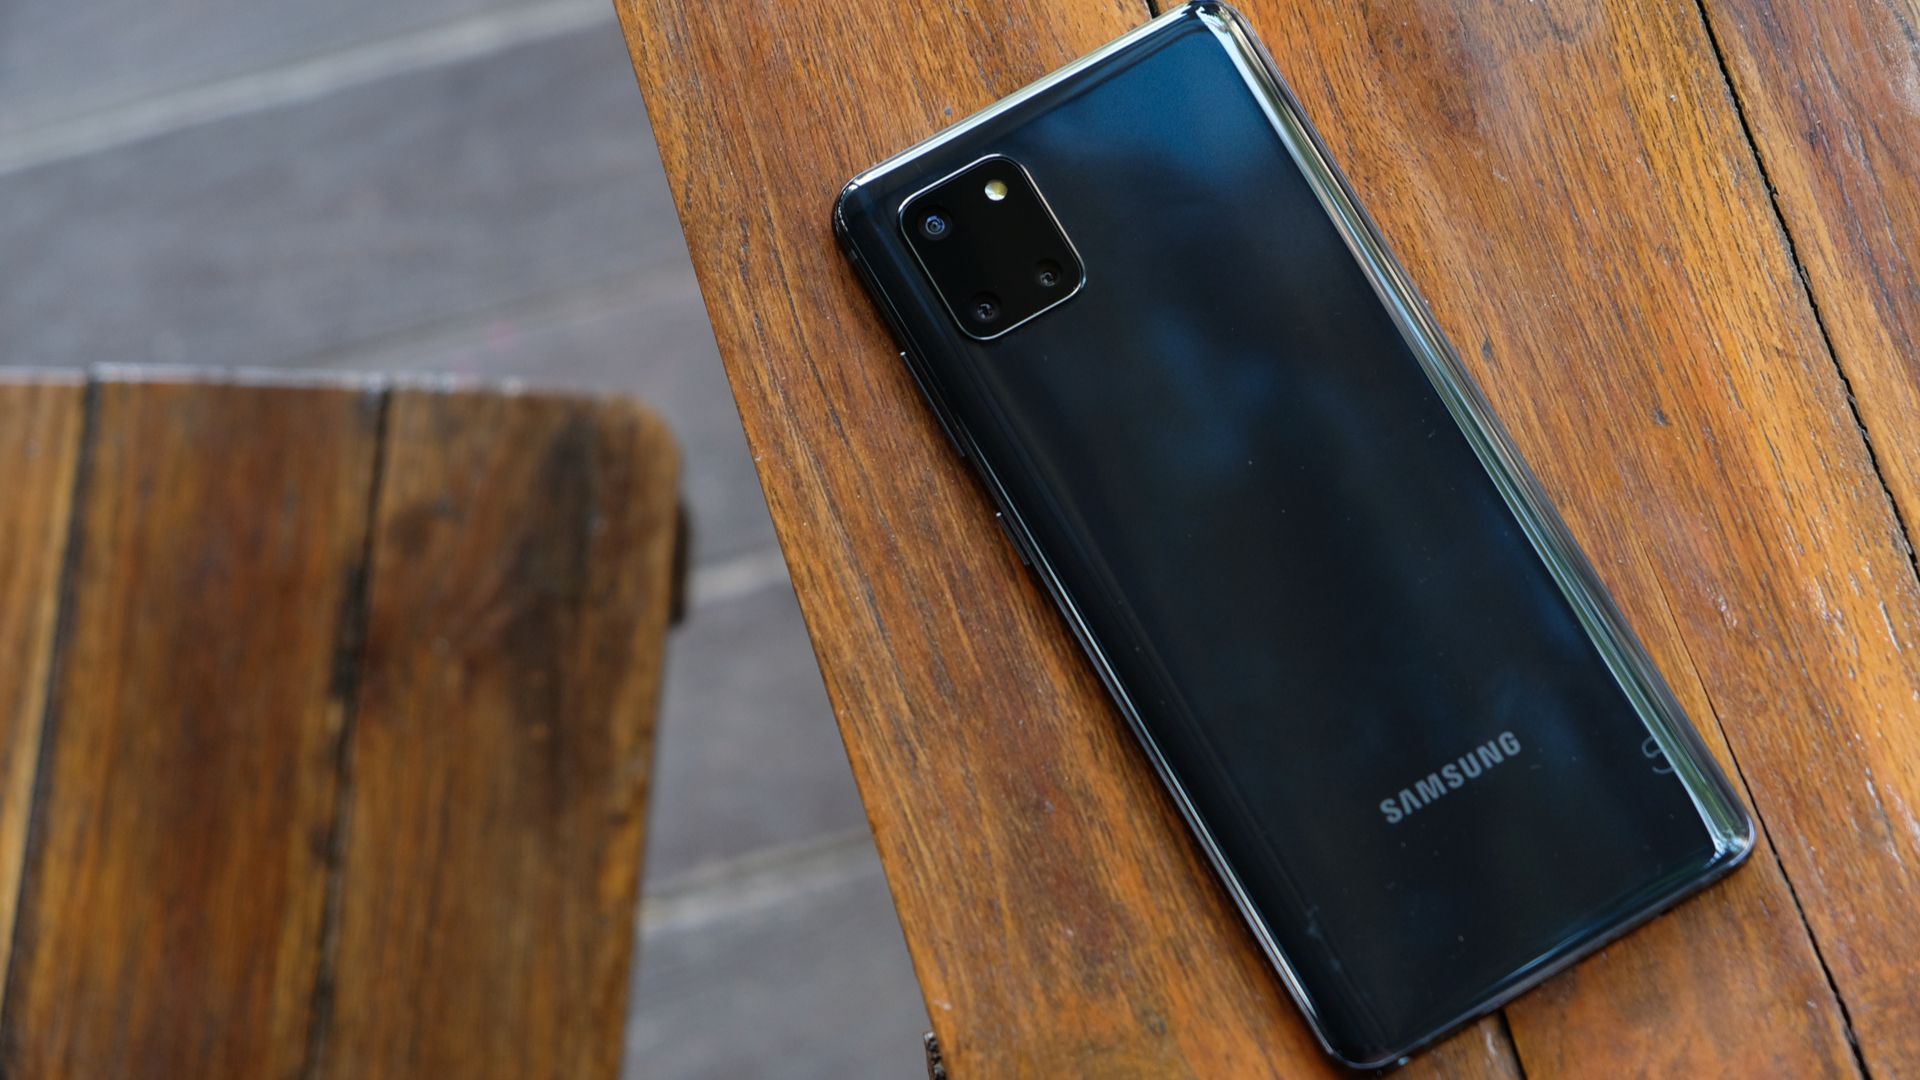 Smartphone Samsung Galaxy Note 10 Lite SM-N770F 128GB Câmera Tripla com o  Melhor Preço é no Zoom